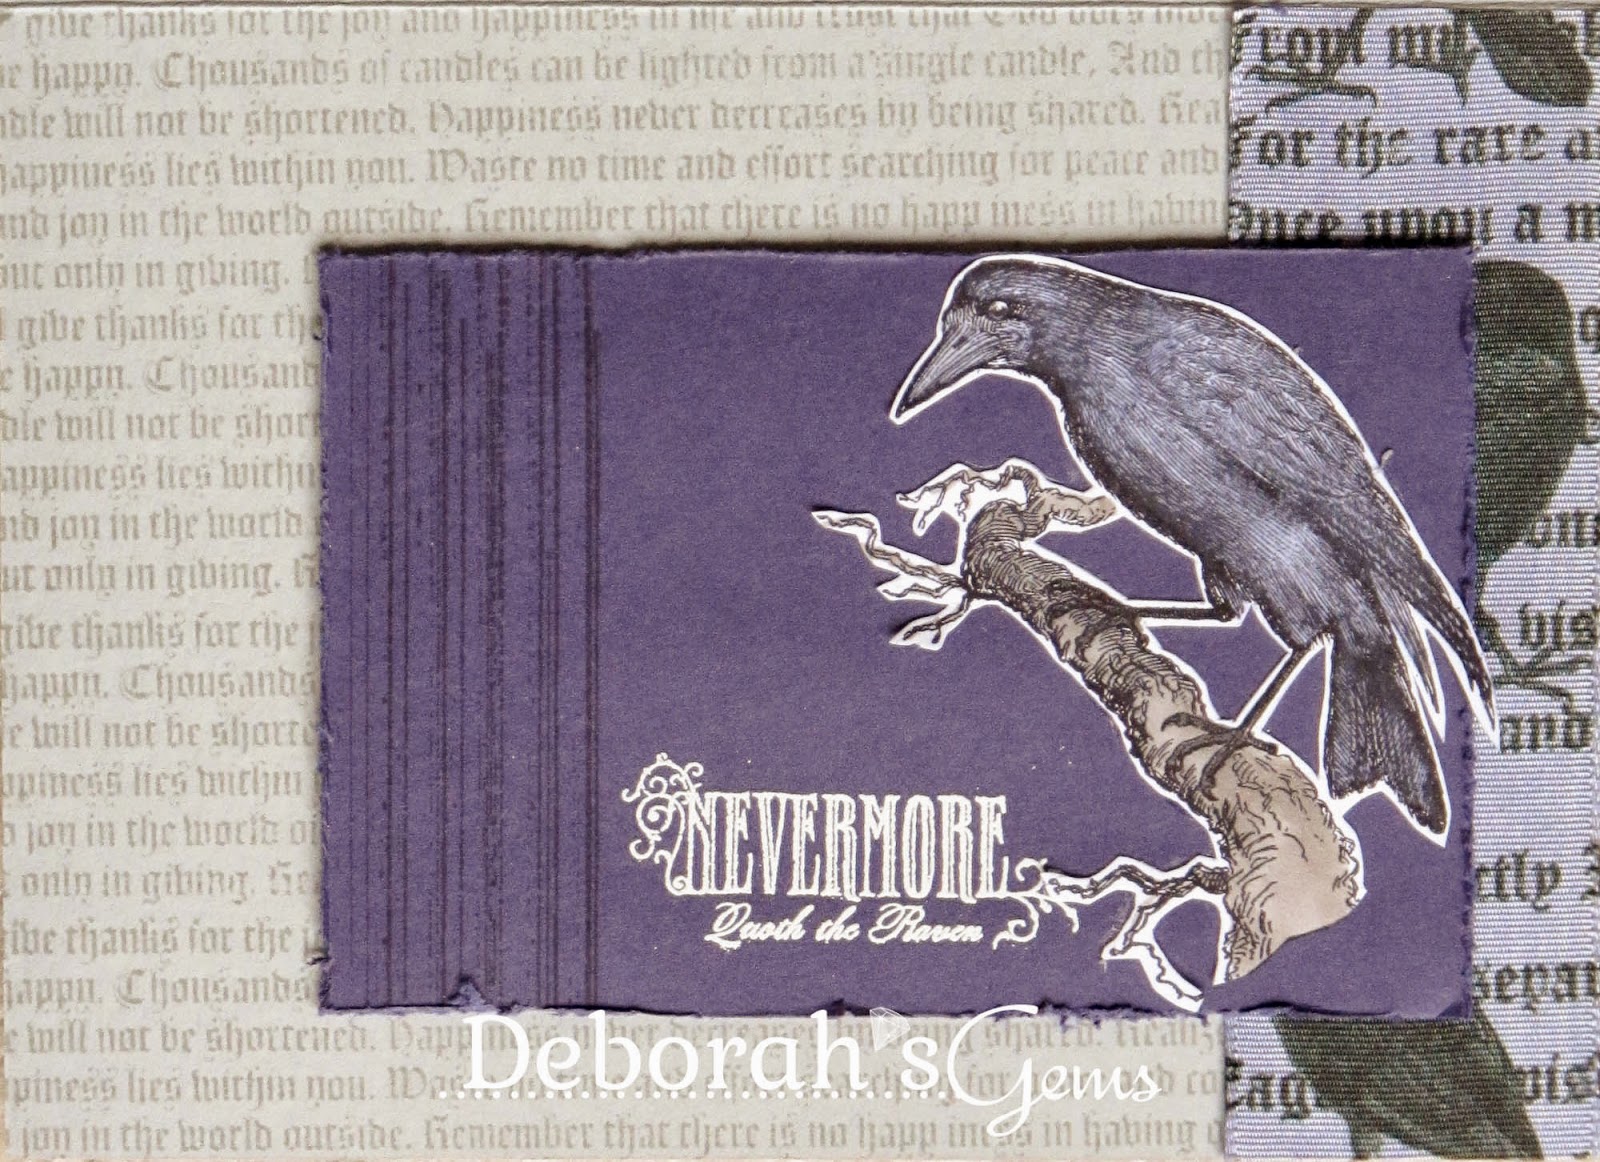 Nevermore - photo by Deborah Frings - Deborah's Gems